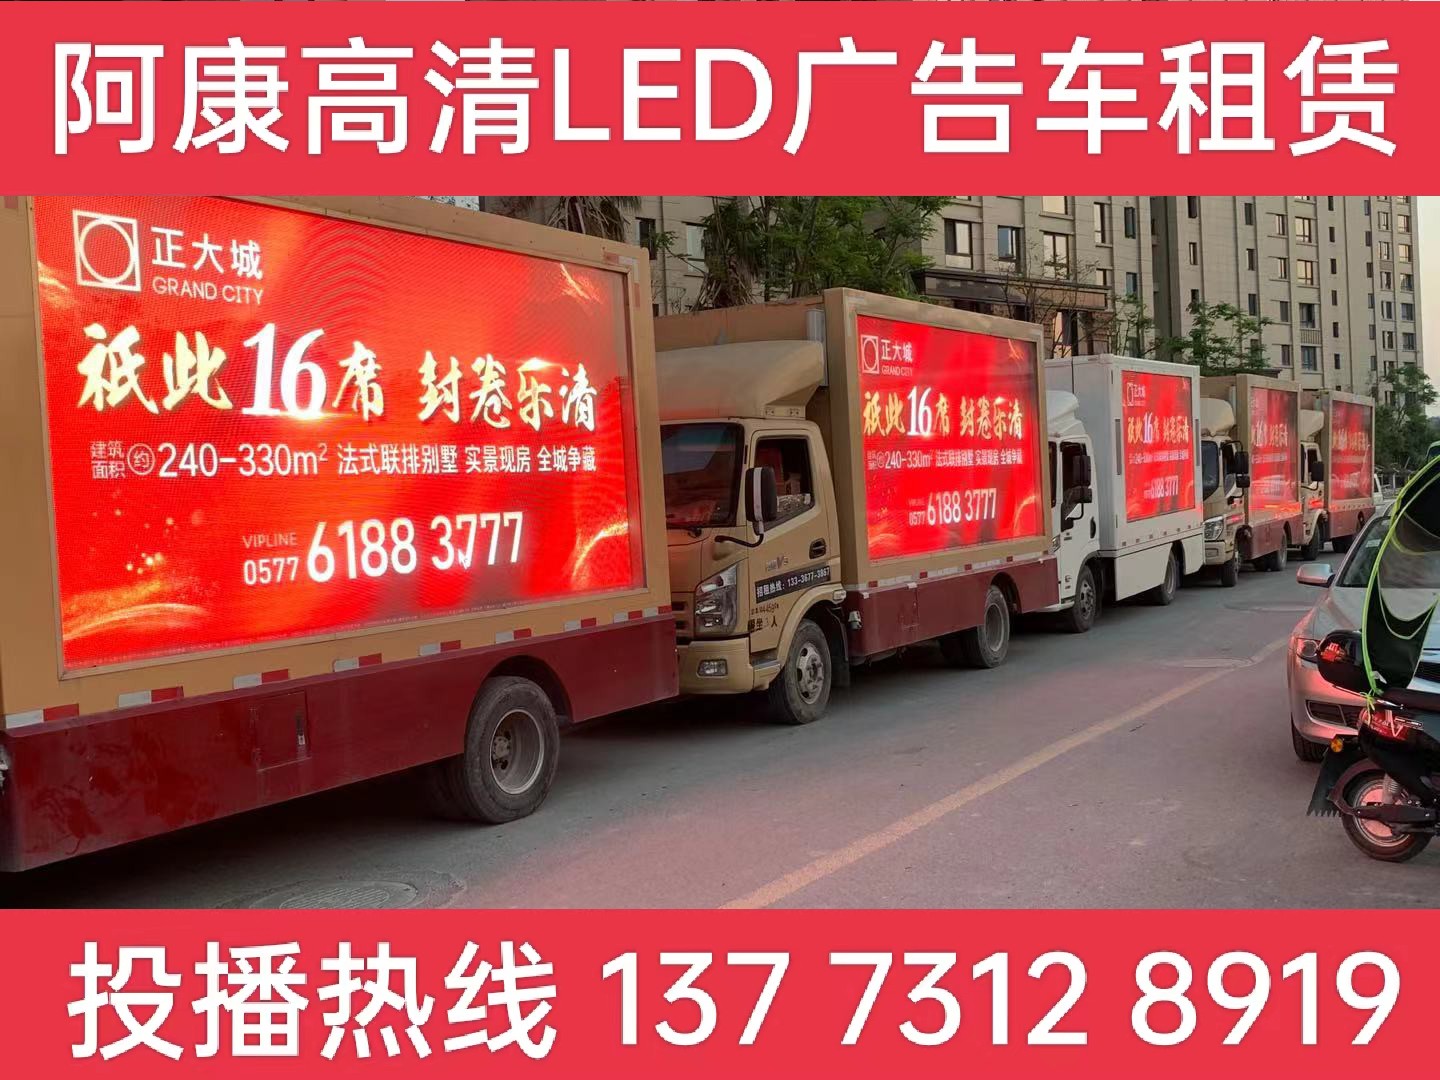 常熟LED广告车出租